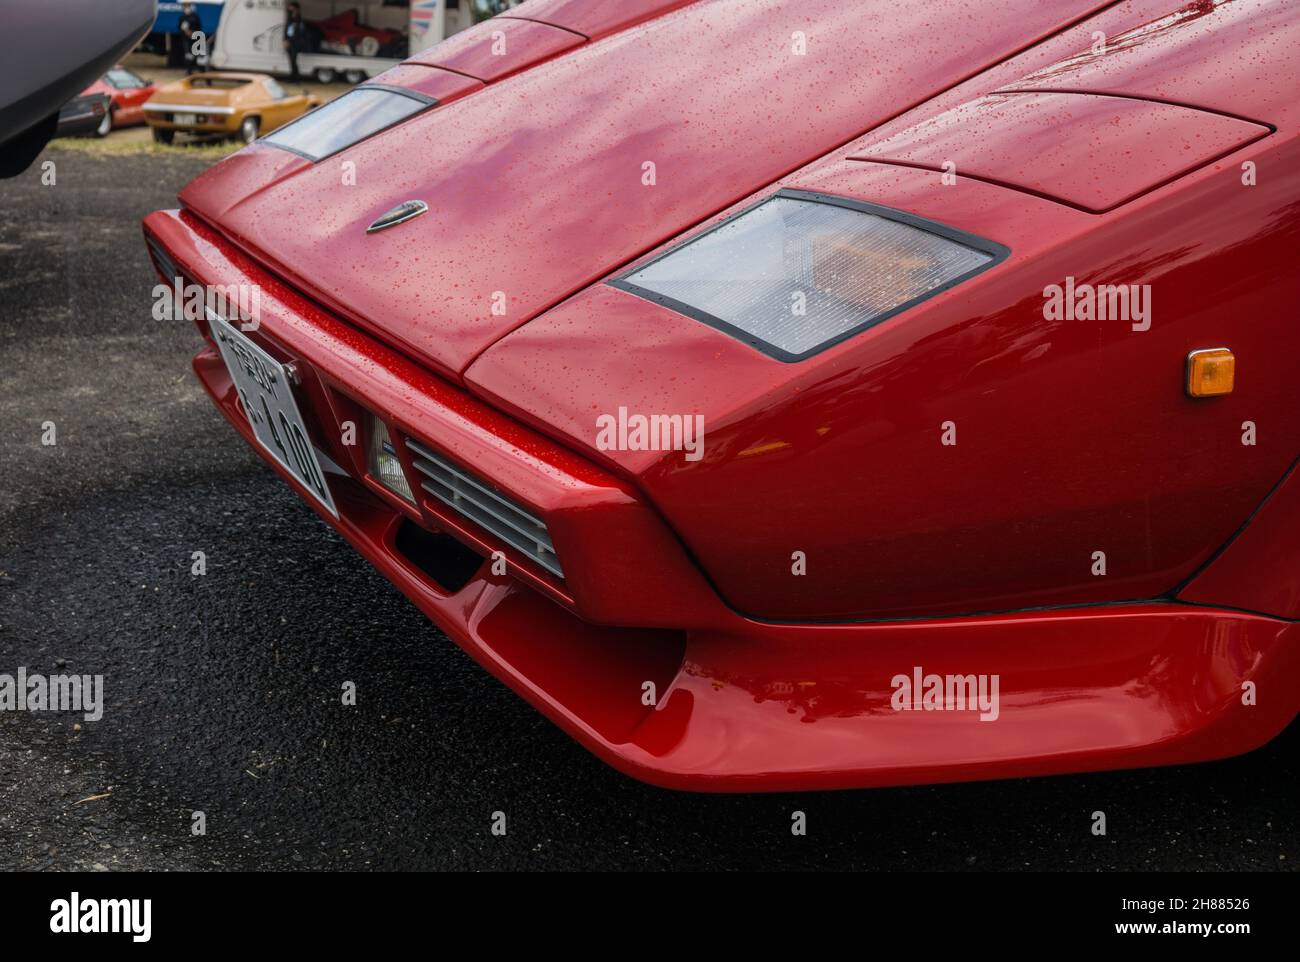 Gros plan sur le phare et le capot d'une voiture de sport italienne classique Lamborghini Countach LP400S rouge. Banque D'Images